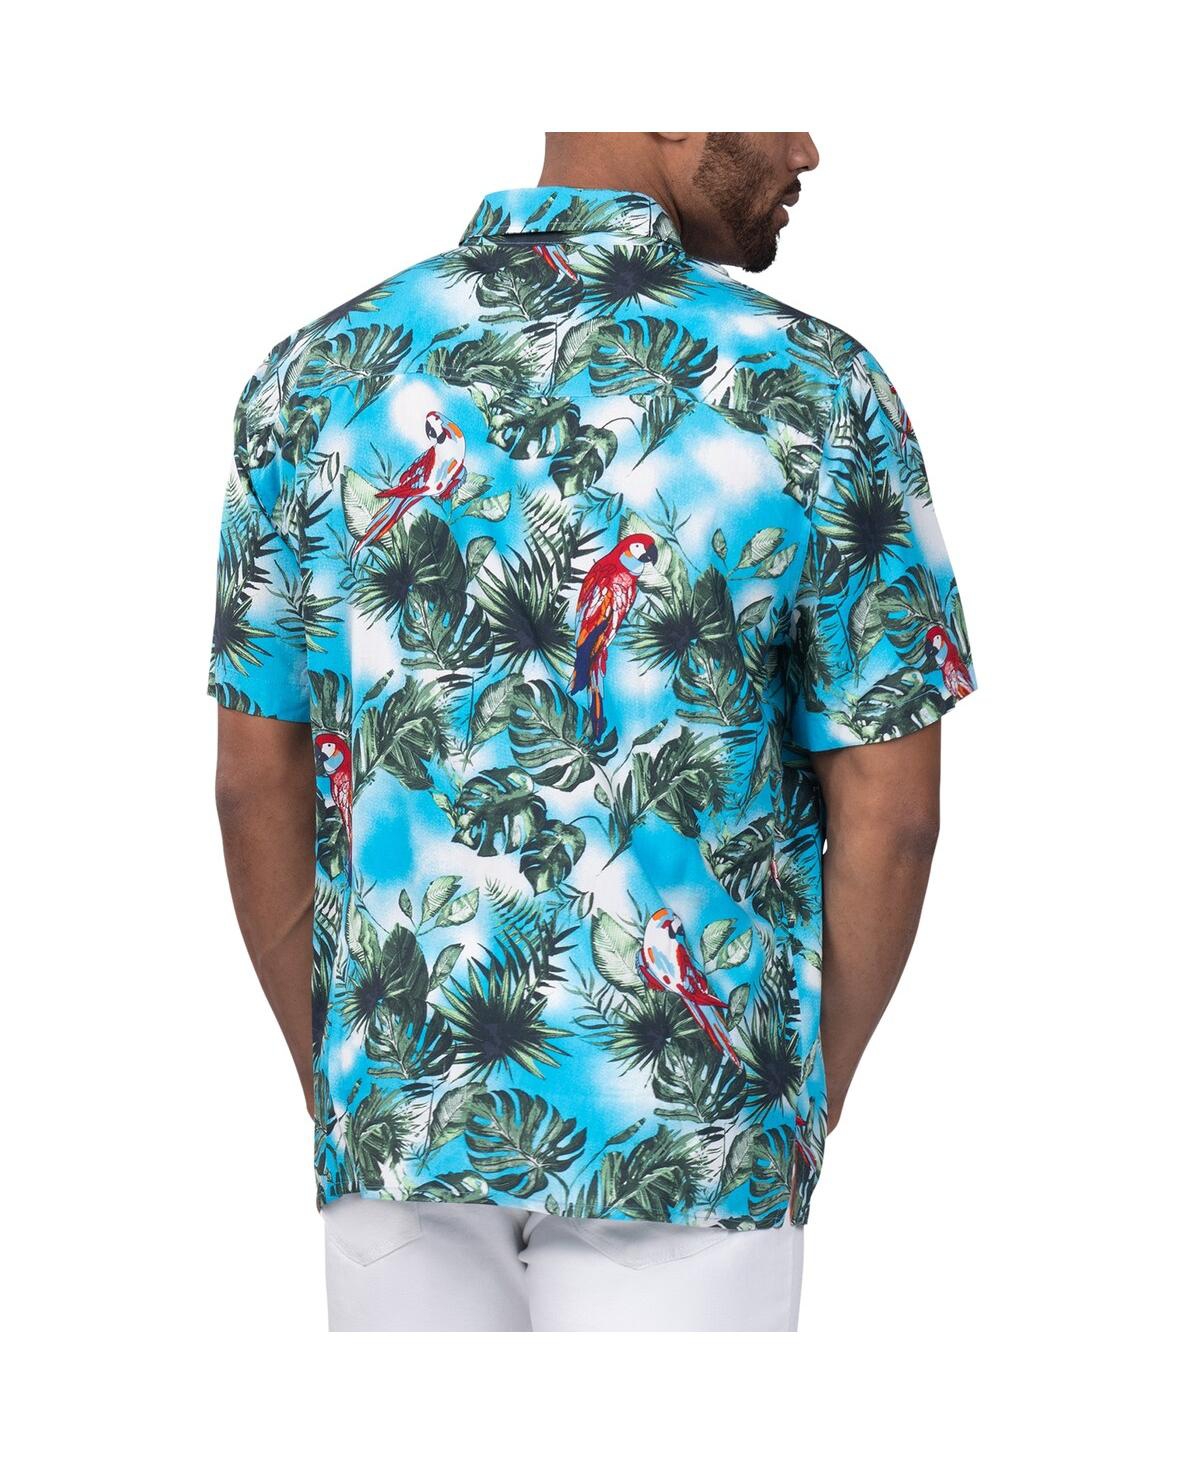 Shop Margaritaville Men's  Light Blue Kyle Larson Jungle Parrot Party Button-up Shirt